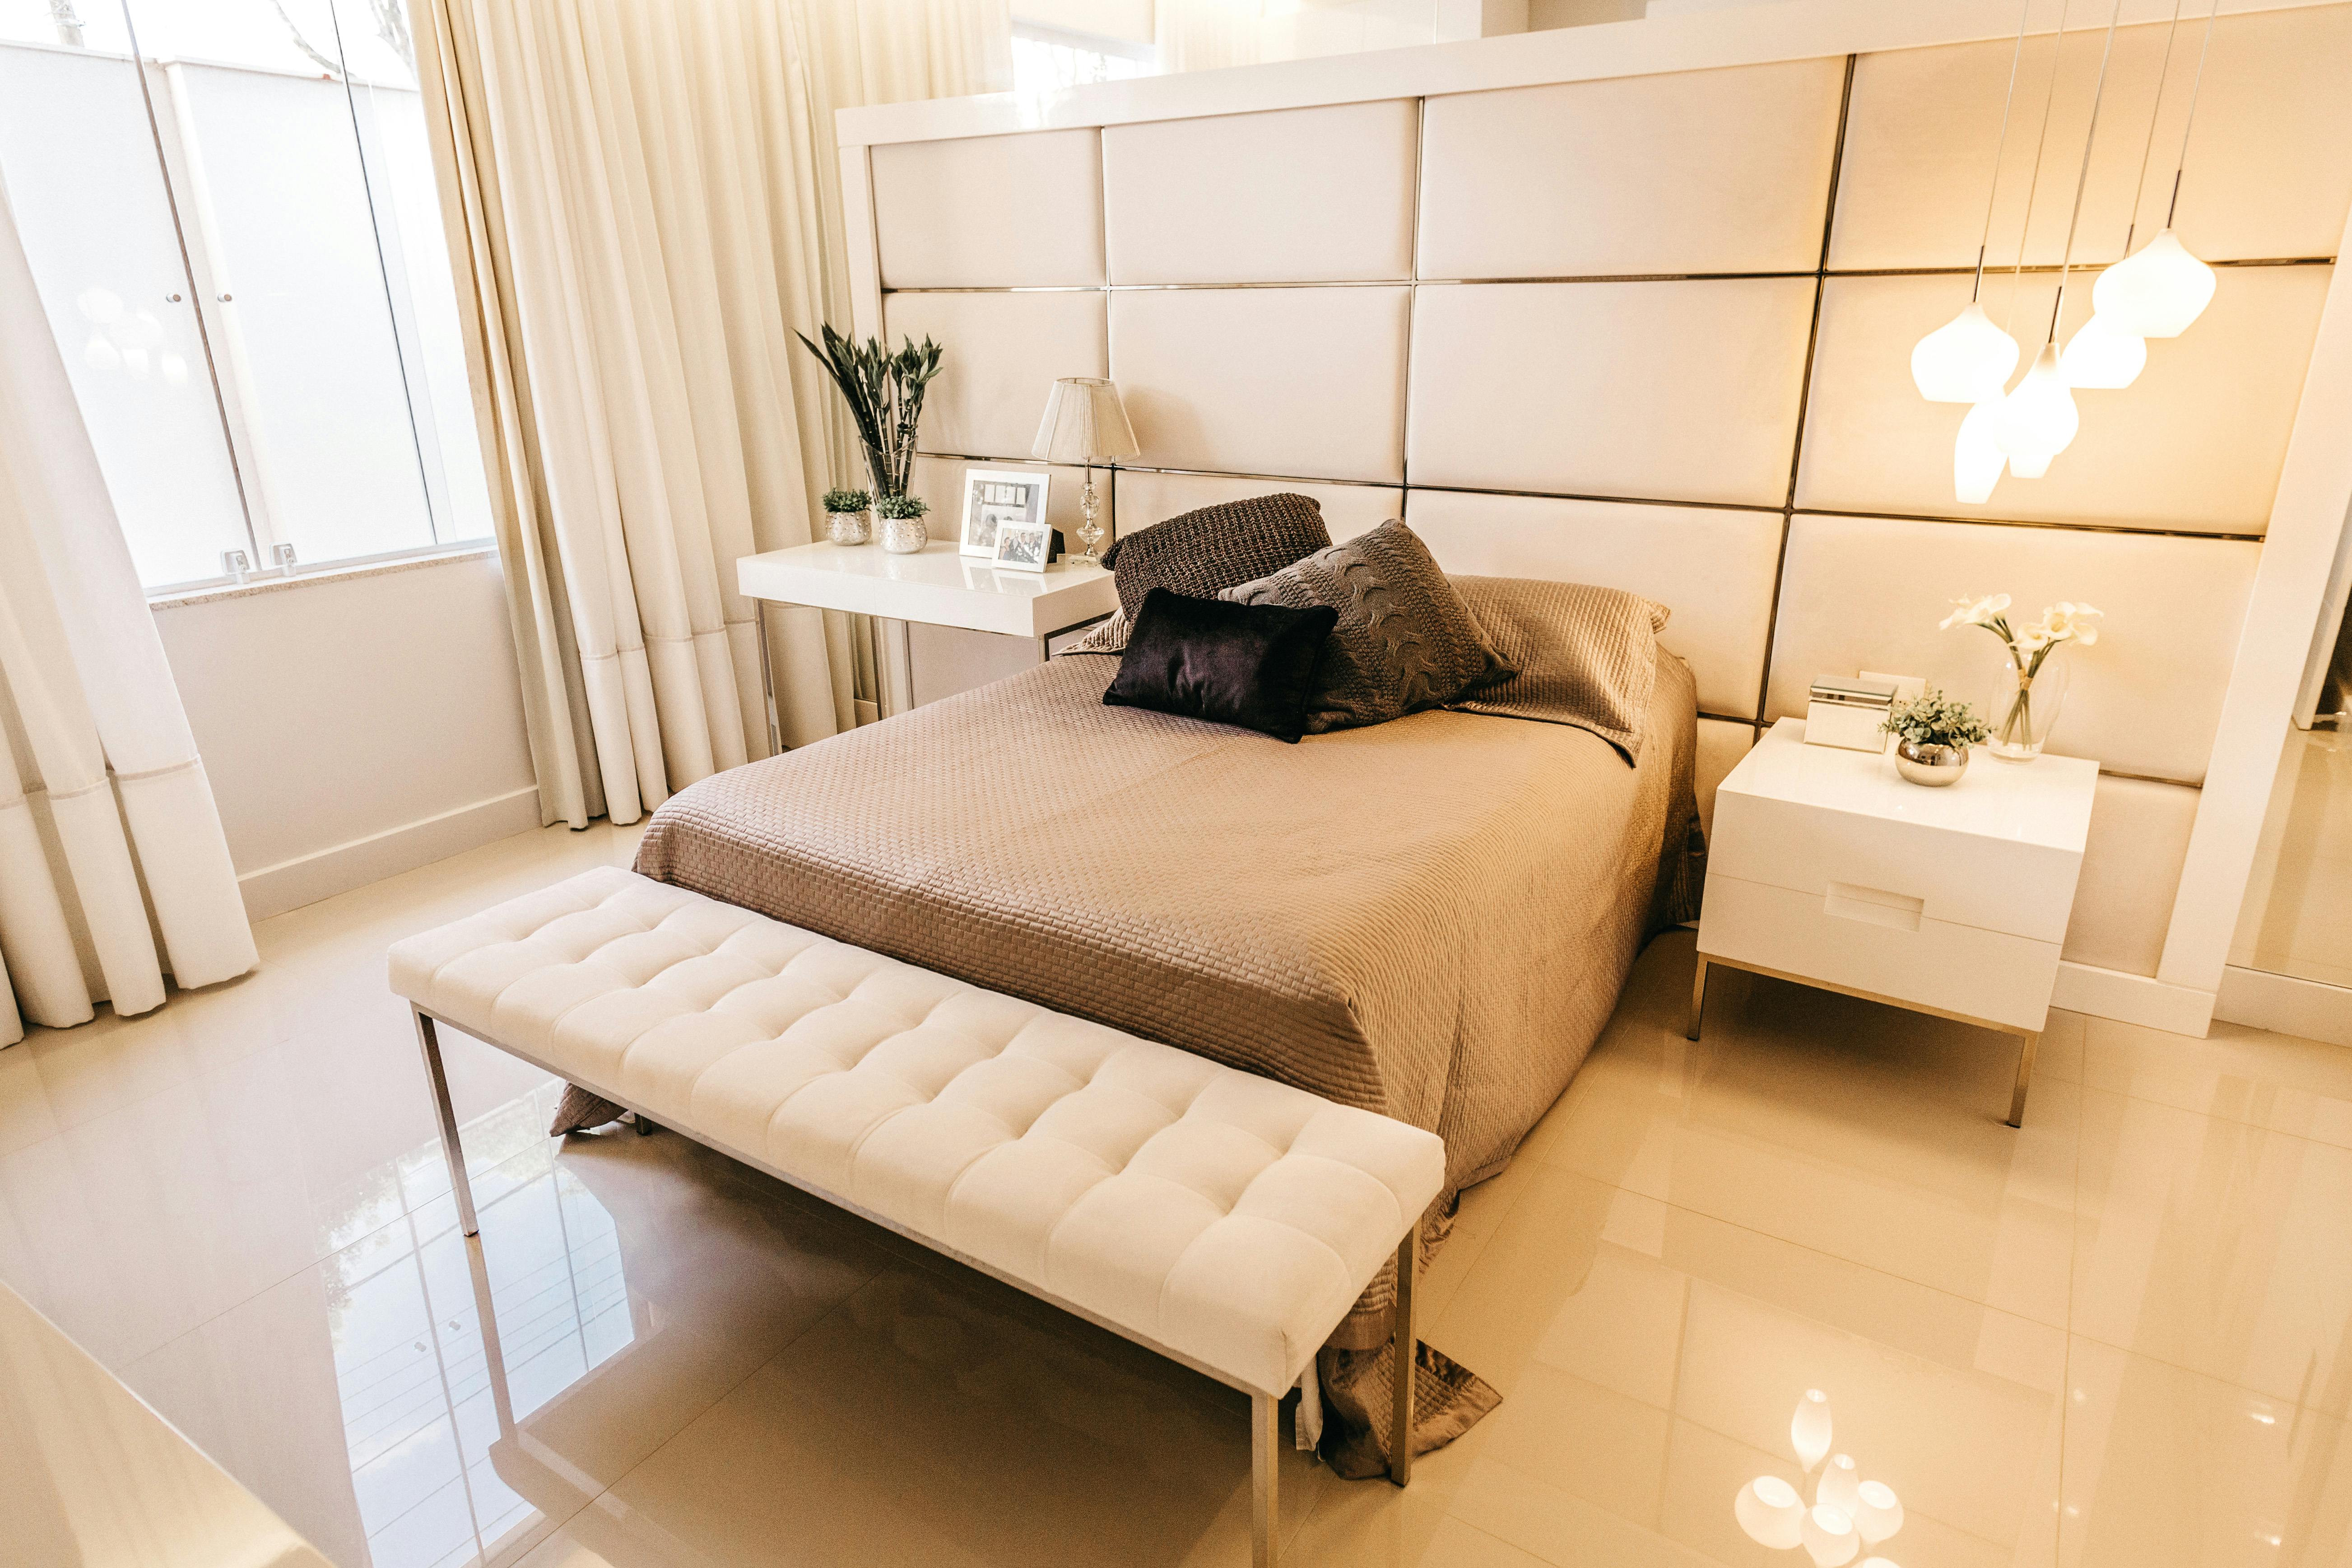 modern bedroom furniture wayfair